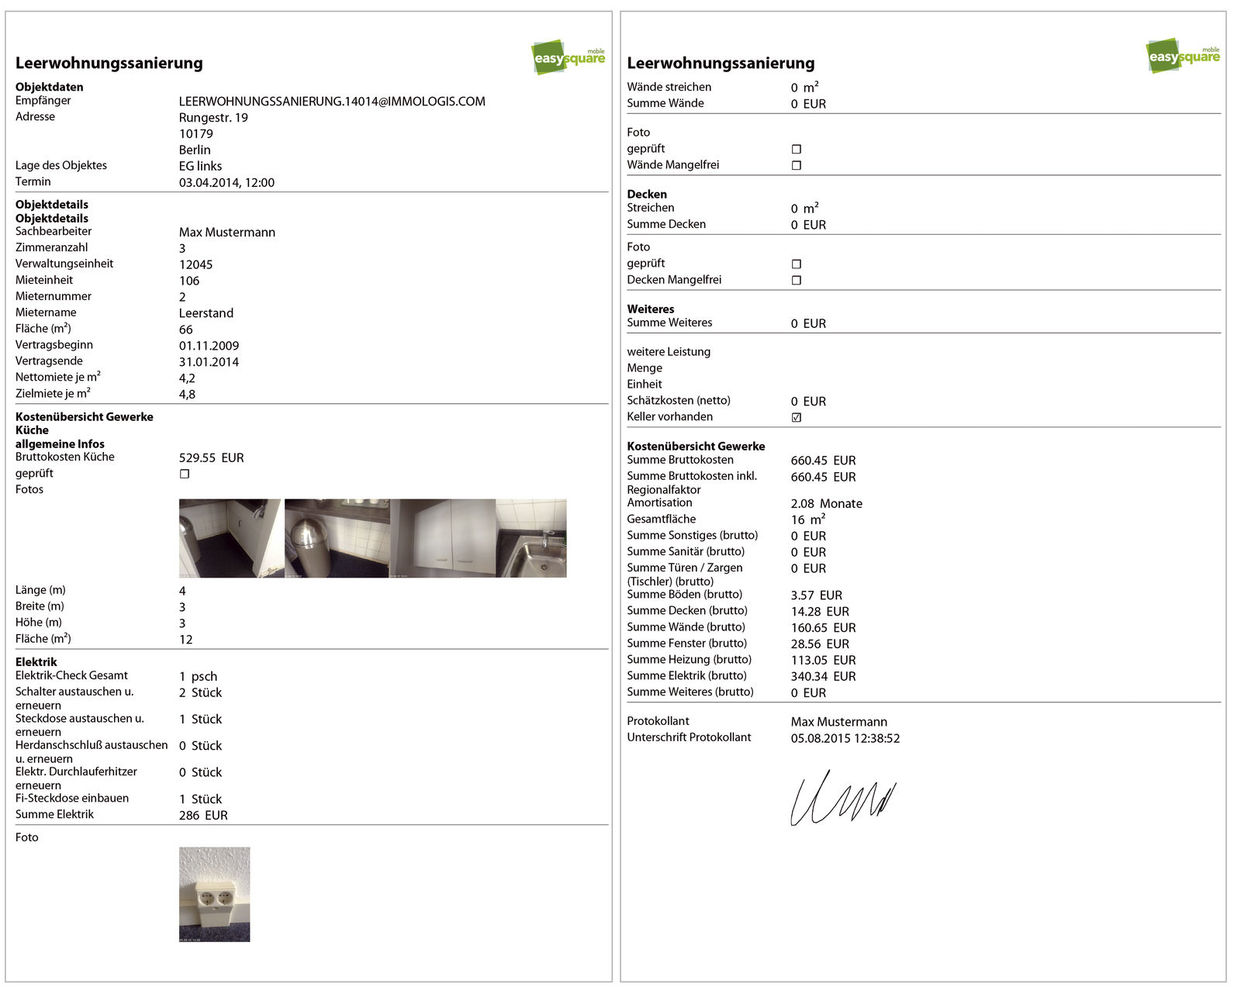 PDF-Protokoll aus den ausgefüllten digitalen Formularen inkl. aller Fotos und Unterschrift mit der easysquare Leerwohnungssanierung